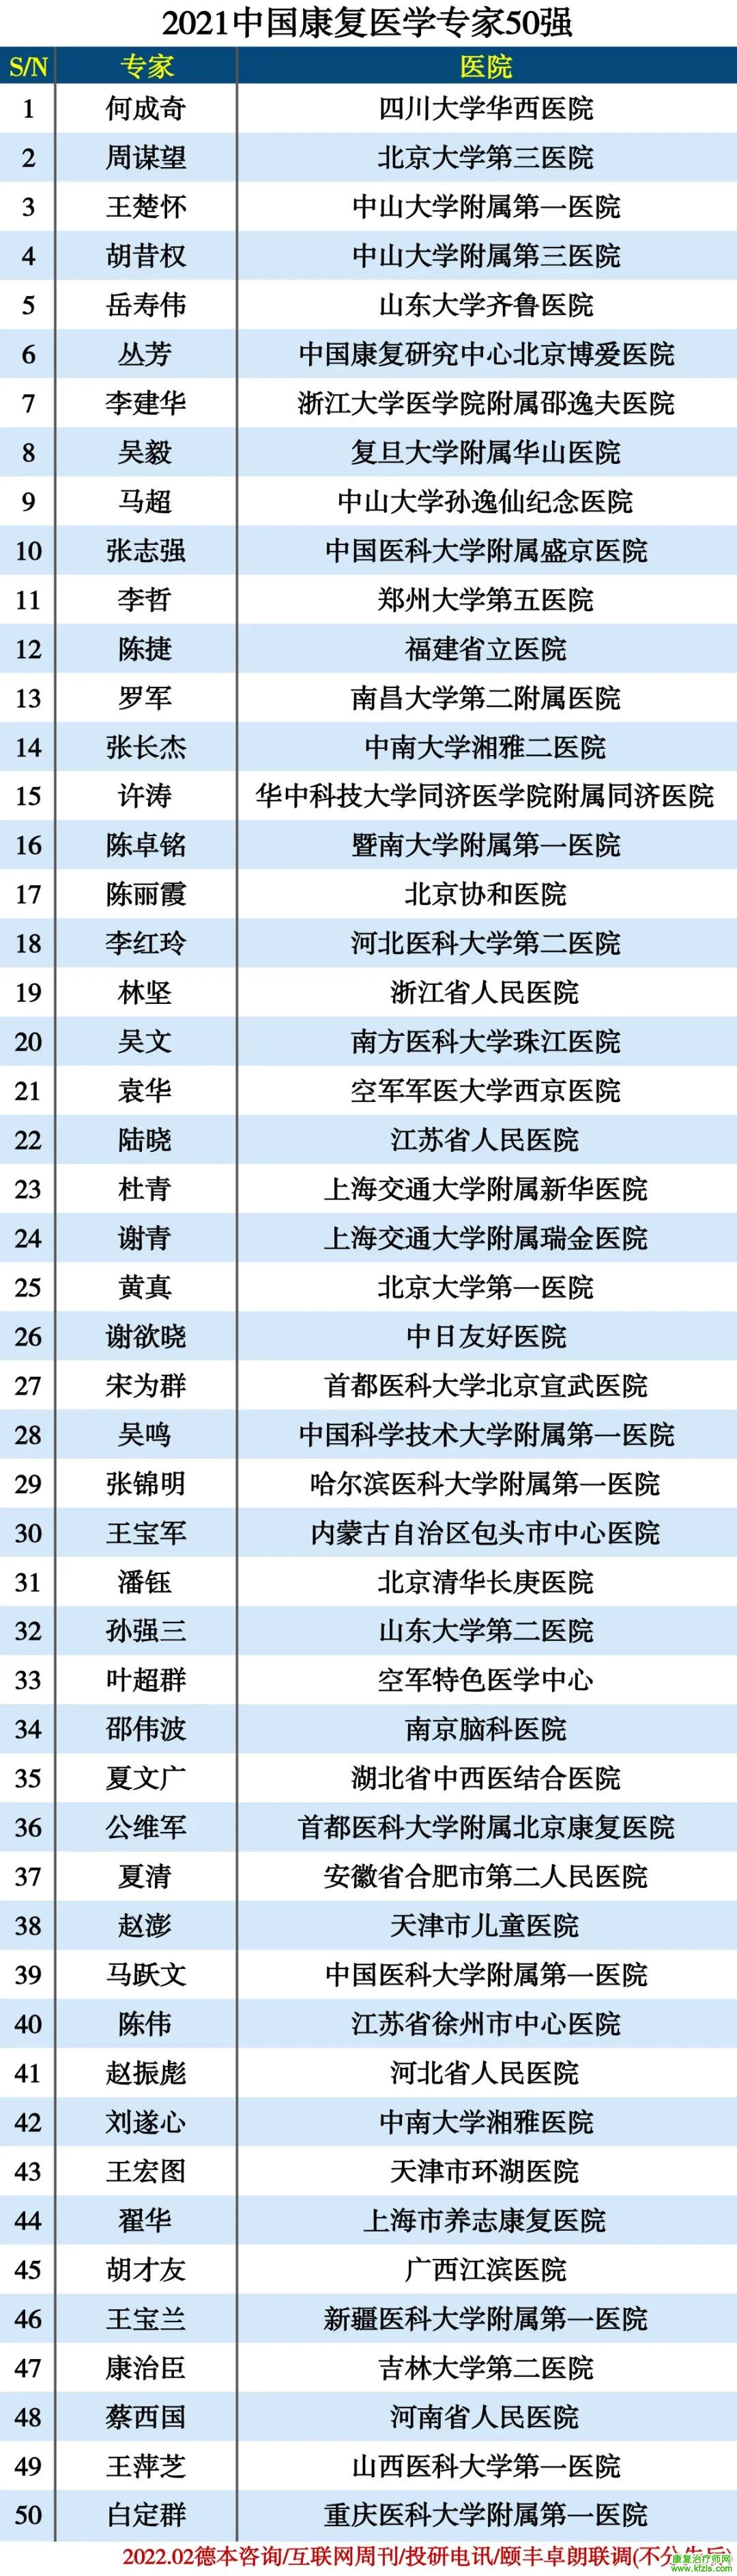 最新榜单！中国康复医学专家前50强列表！